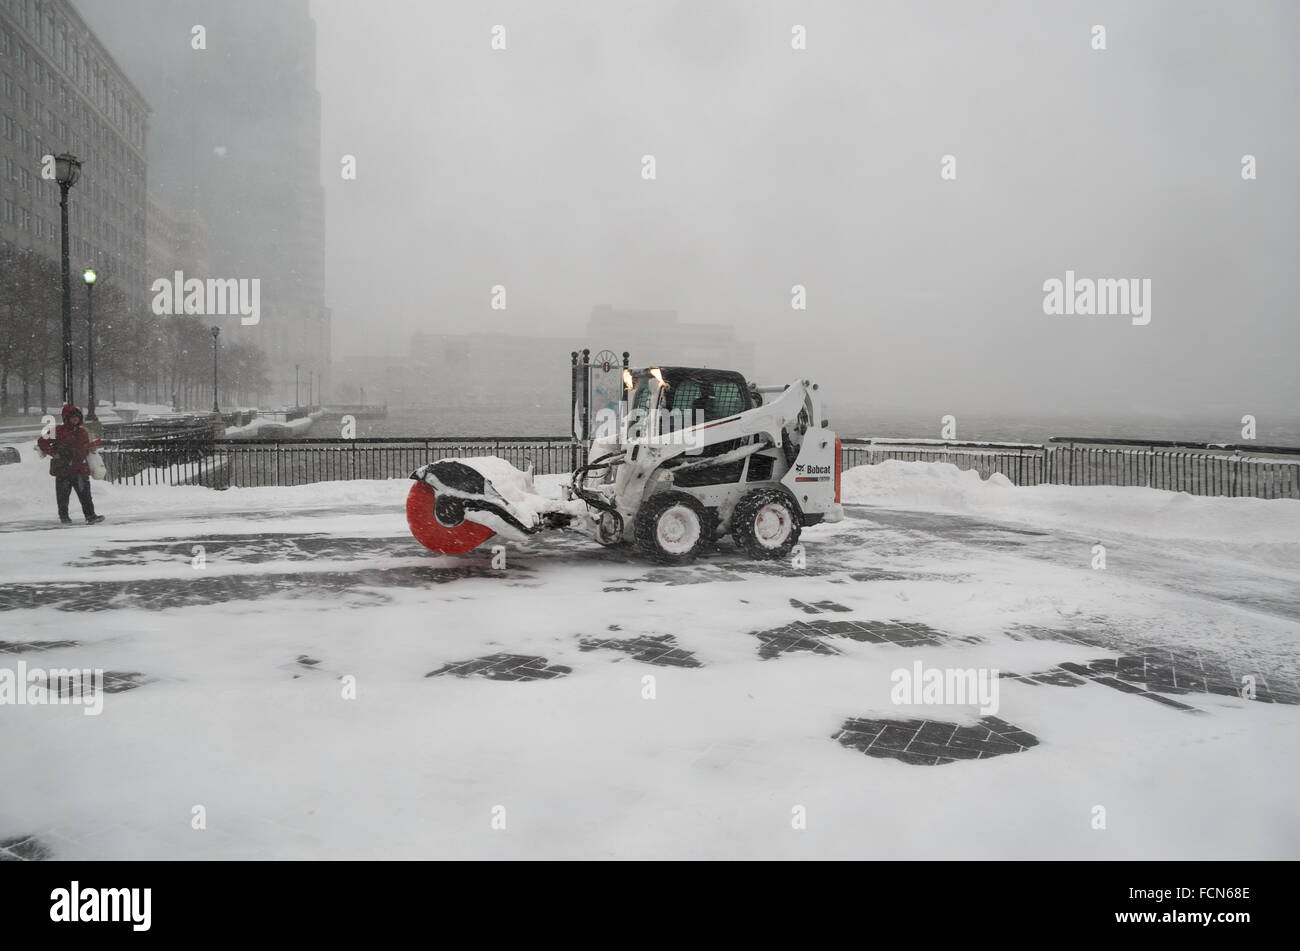 Jersey City, USA. 23. Januar 2016. Eine Schnee-Kehrmaschine löscht die verkehrsberuhigten Uferpromenade. Blizzard-Bedingungen entlang der nordöstlichen Küste führten in einen Ausnahmezustand als Declard in vielen Bereichen. Bildnachweis: Elizabeth Wake/Alamy Live-Nachrichten. Stockfoto